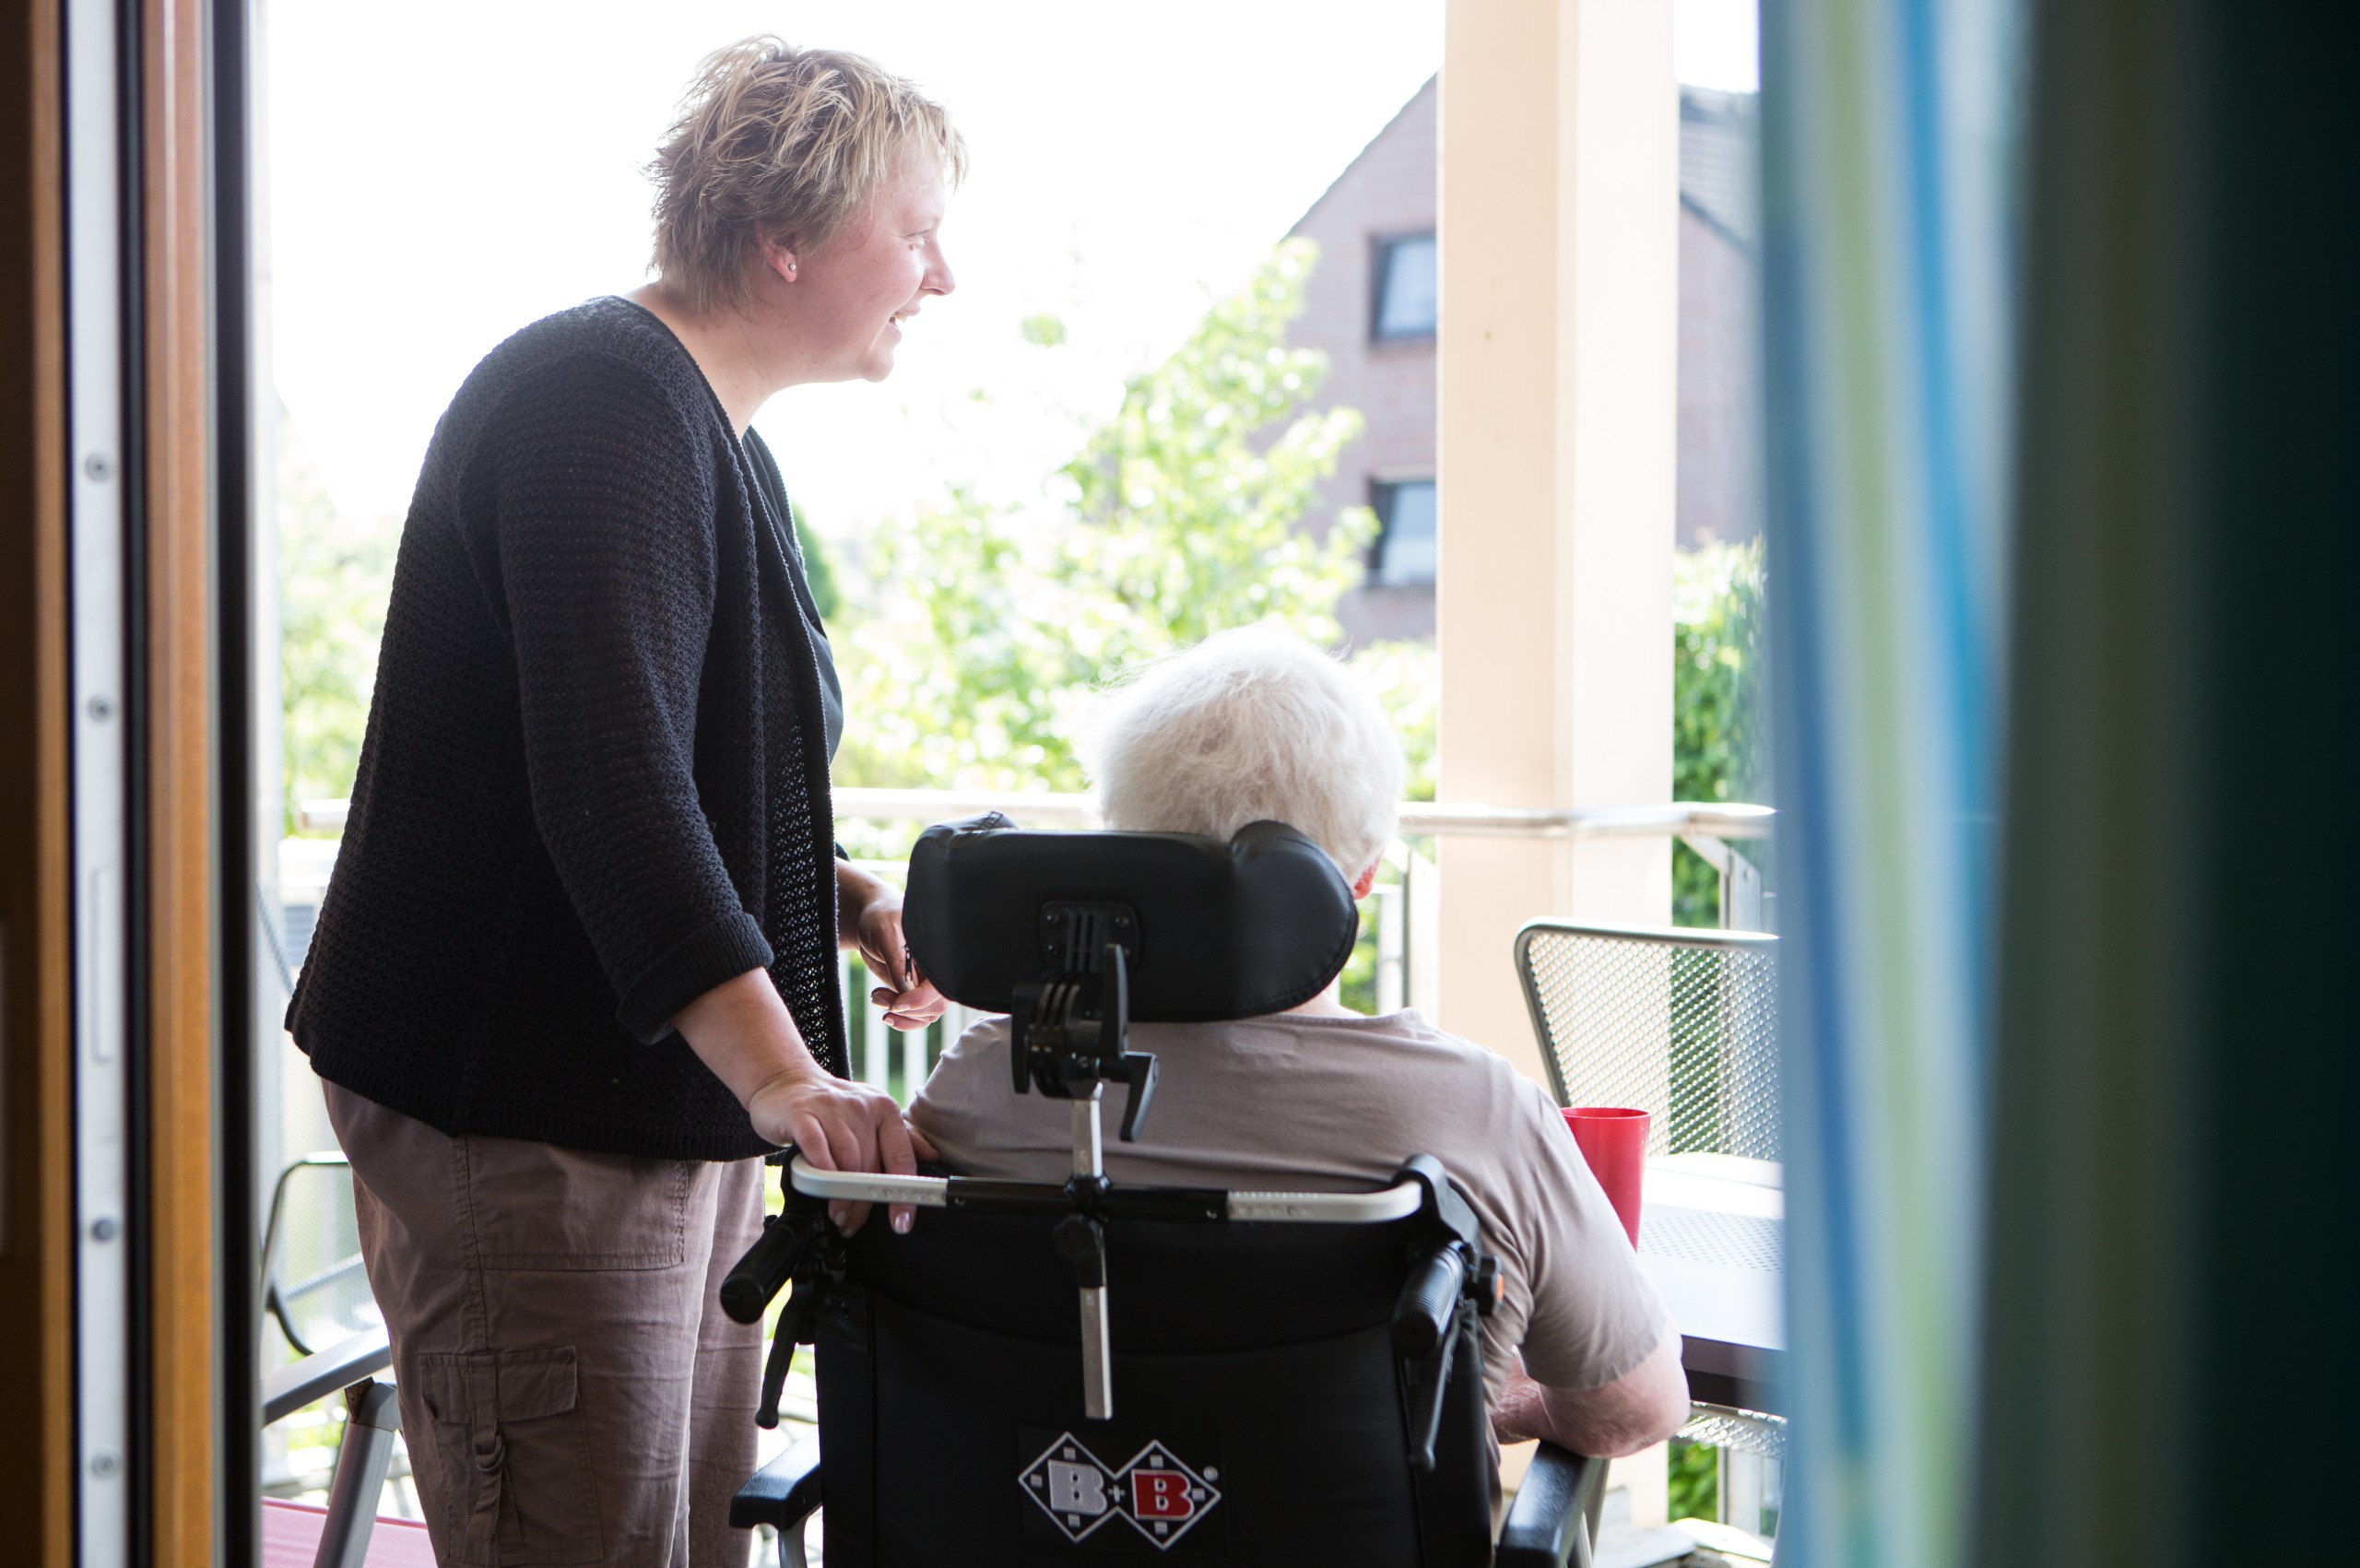 Eine ältere Person im Rollstuhl und eine jüngere Person schauen aus dem Fenster